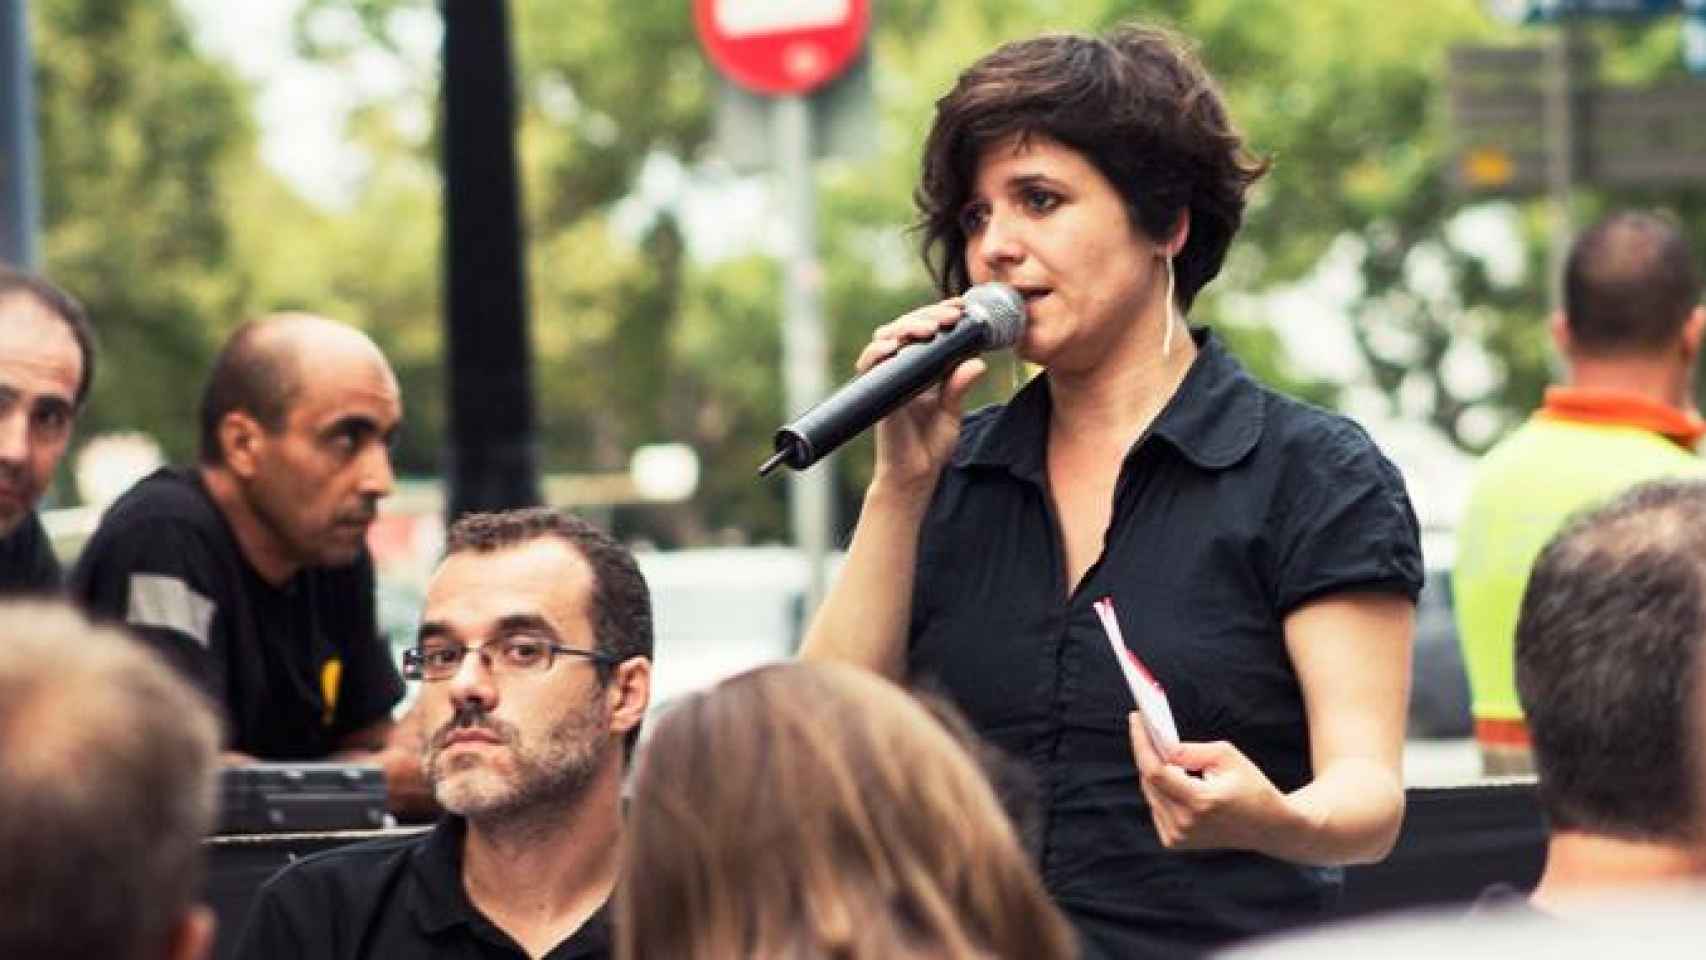 Gala Pin, exconcejal de Ciutat Vella y Participación, en un acto de Barcelona en Comú / CG